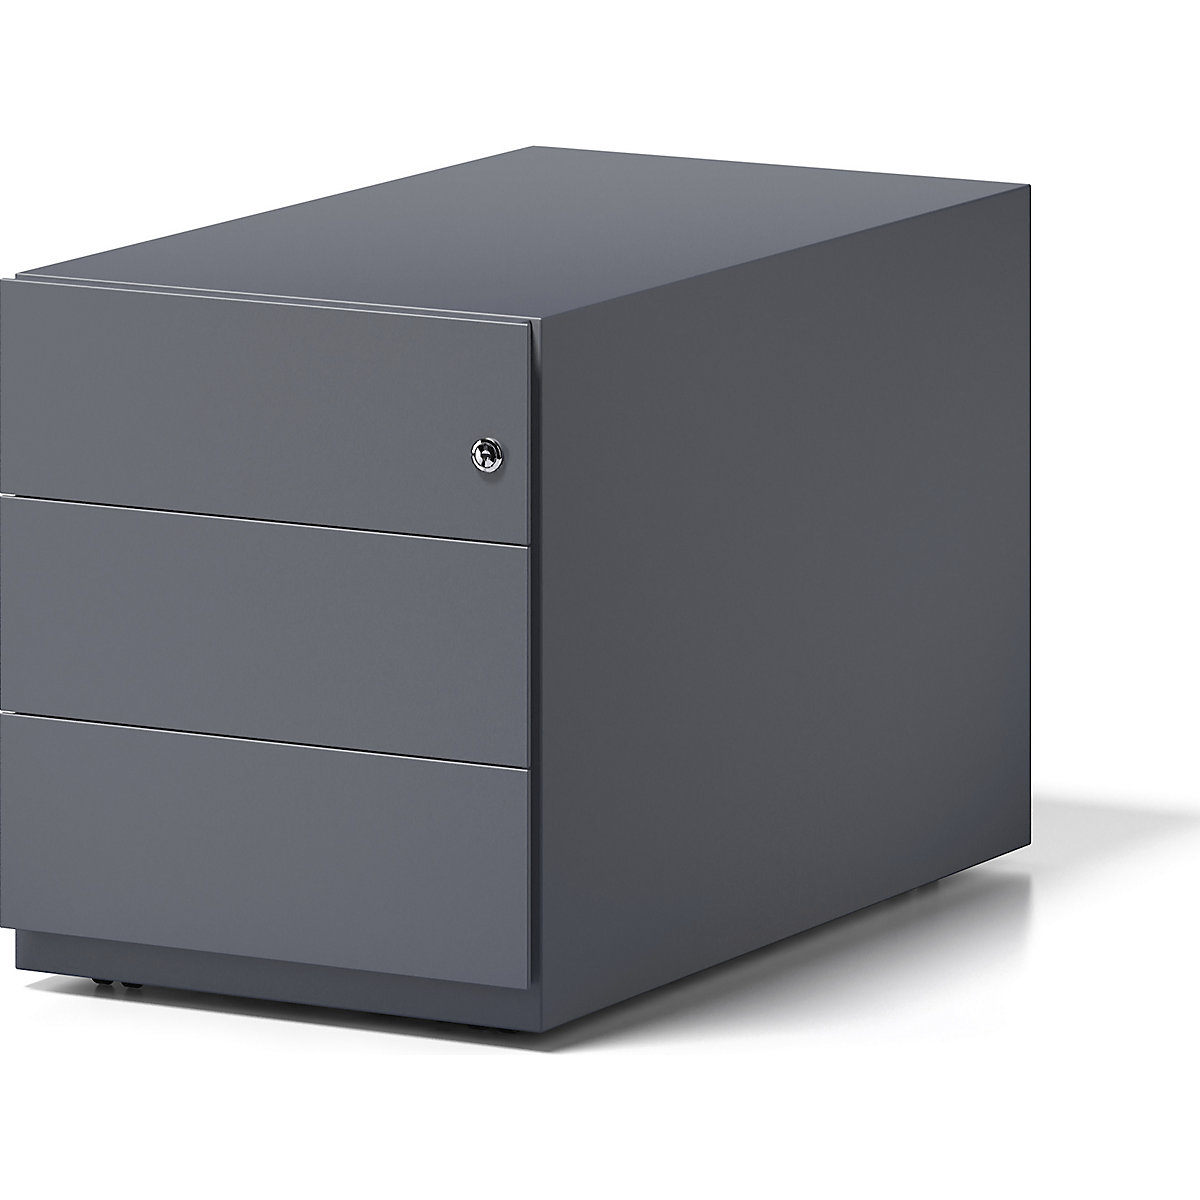 Pojazdný kontajner Note™, s 3 univerzálnymi zásuvkami – BISLEY, v x š x h 495 x 420 x 775 mm, s úchopnou lištou, antracitová šedá-7